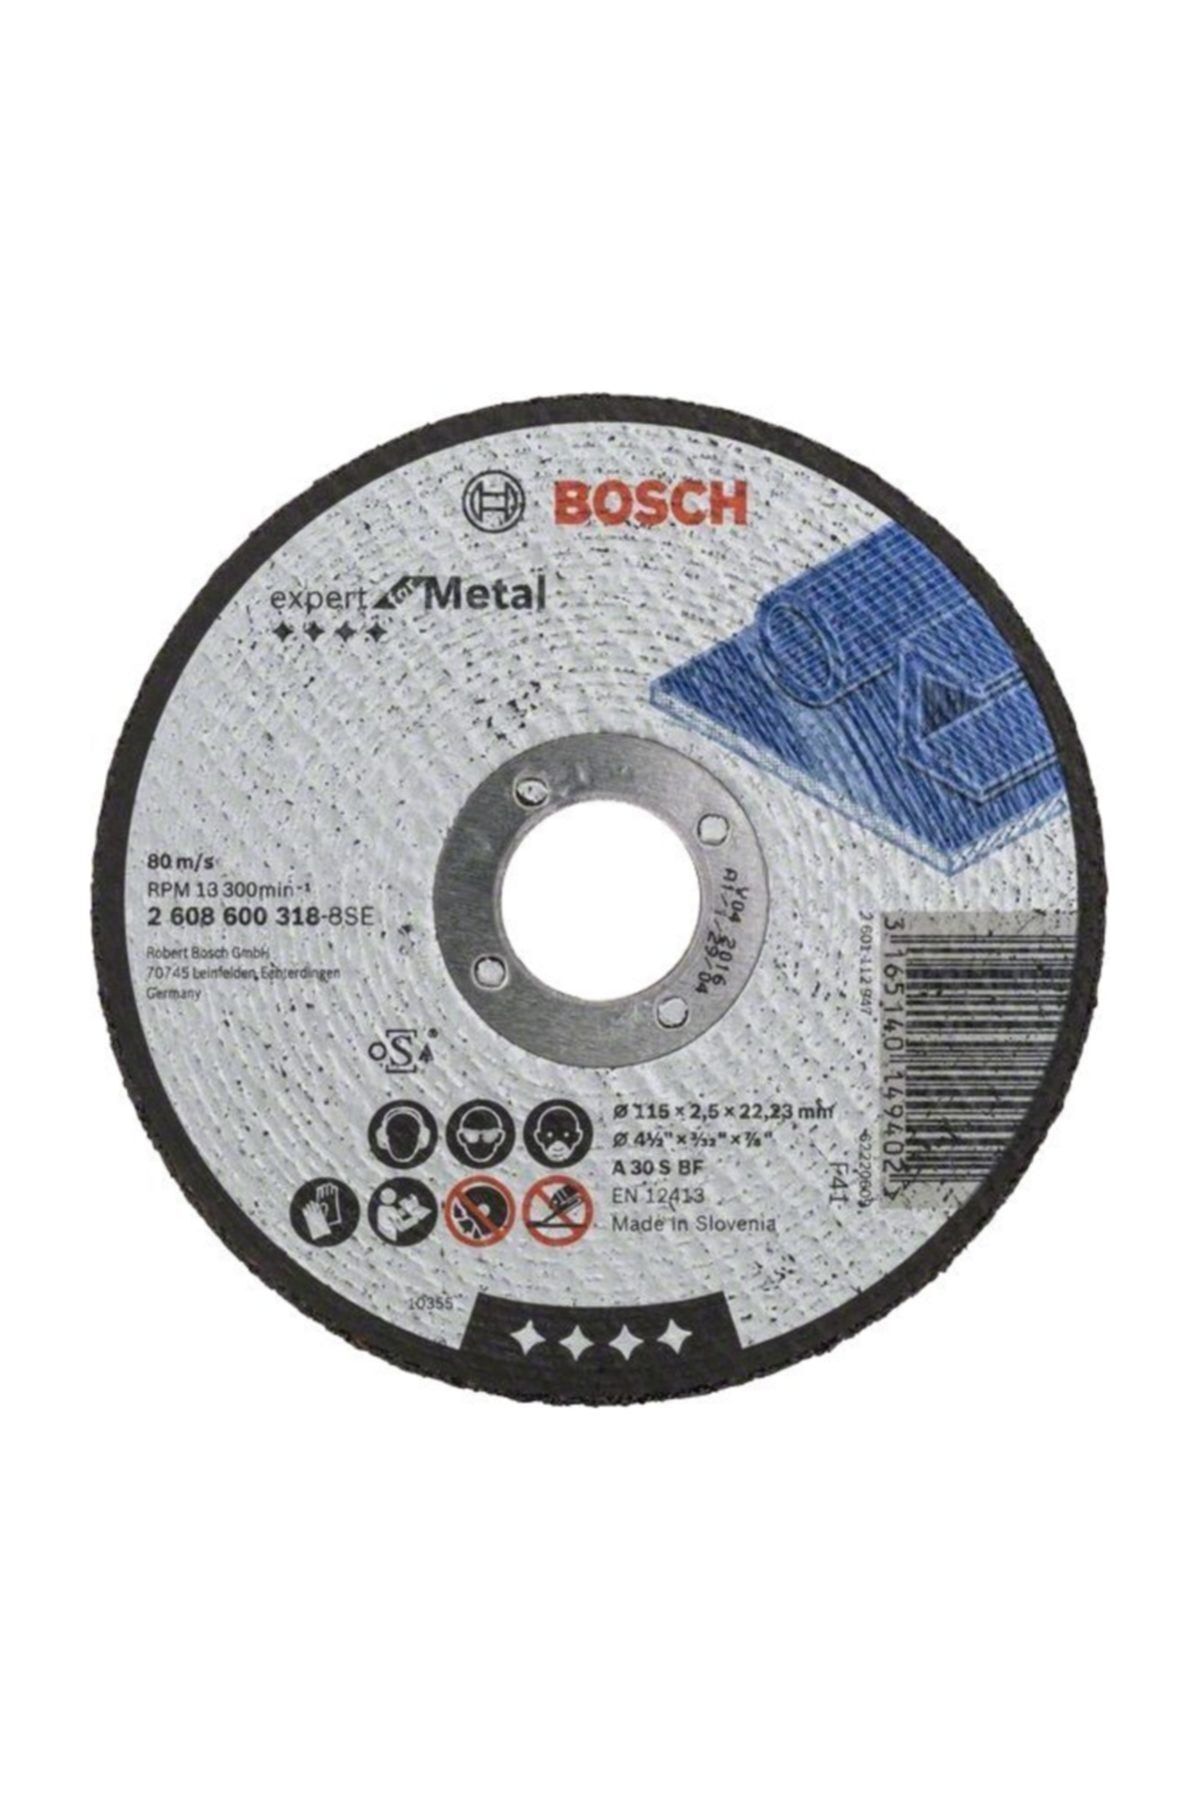 Bosch 115*2,5 Mm Expert For Metal Düz